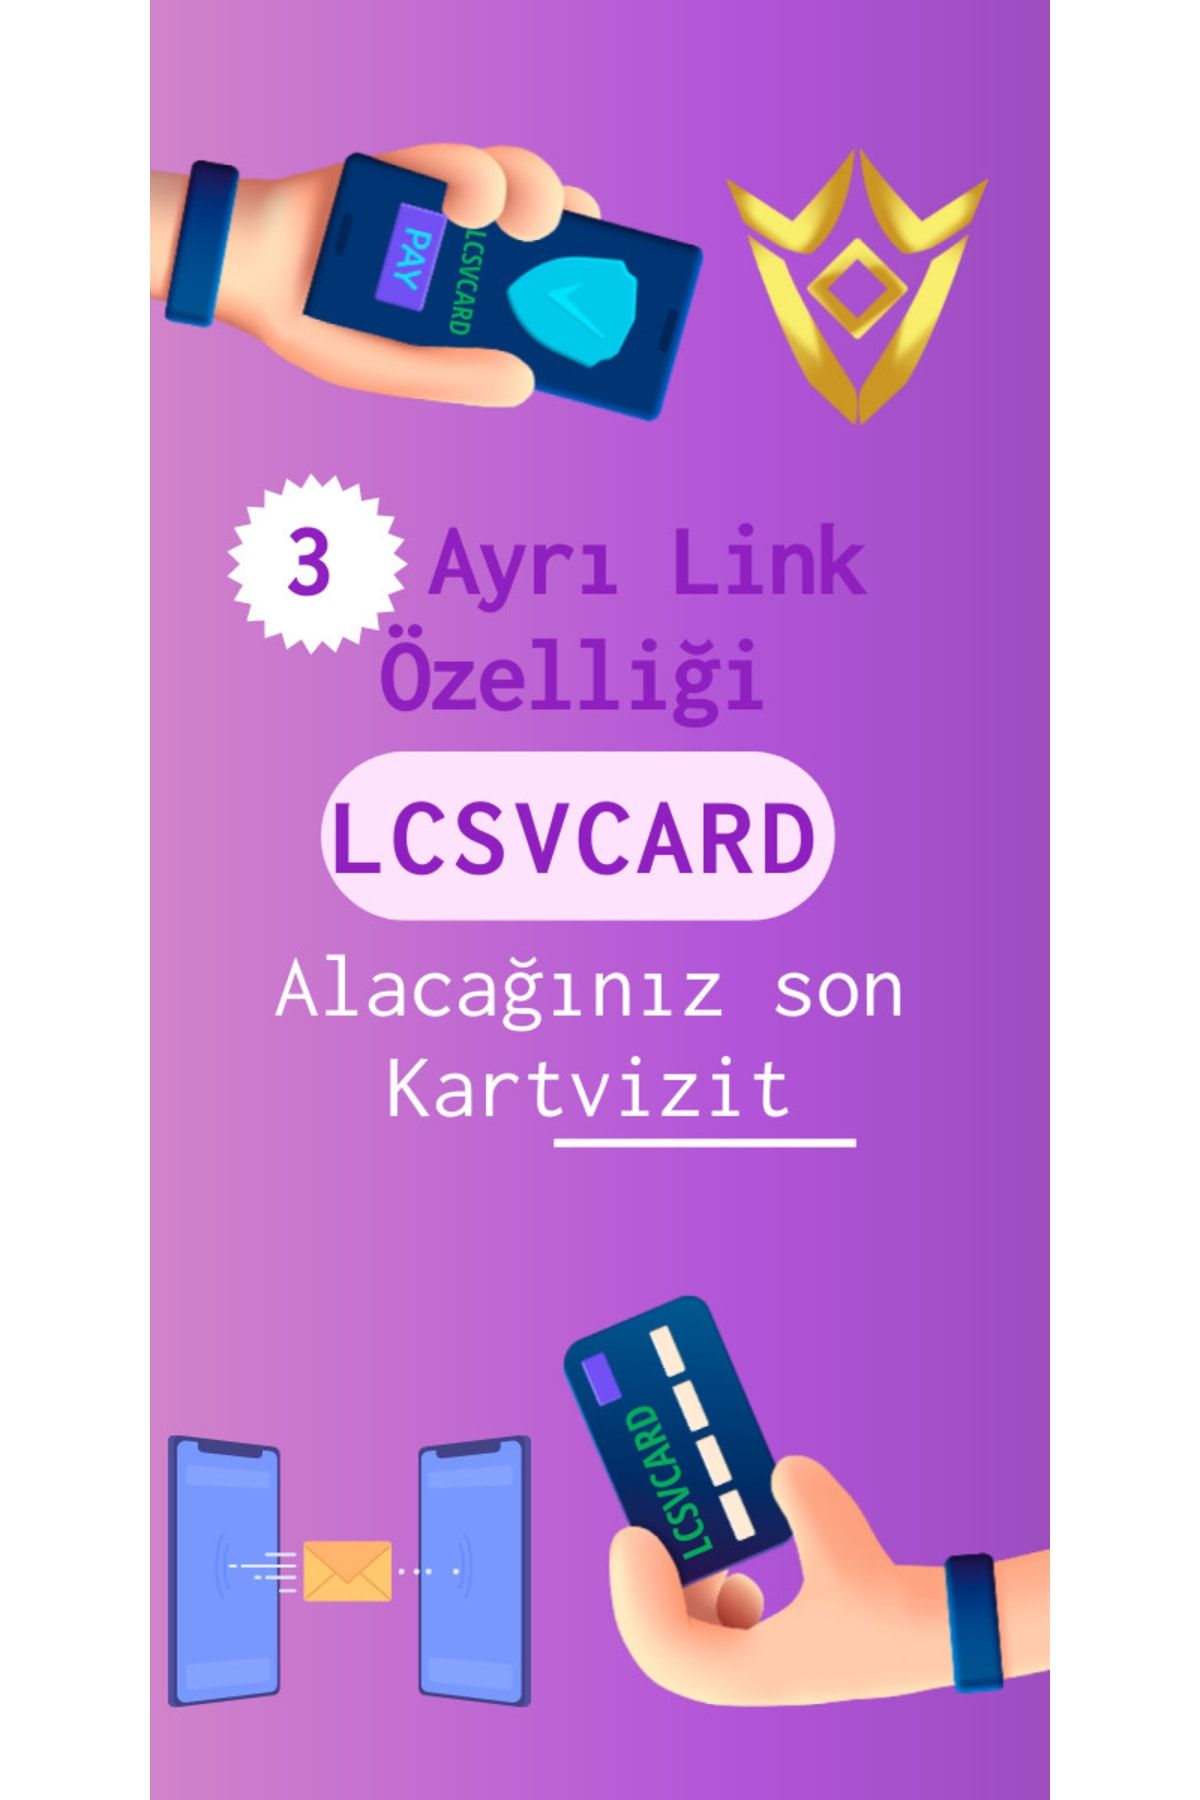 LCS VCard Dijital Kartvizit Kişiye Özel Logo Ve Tasarım